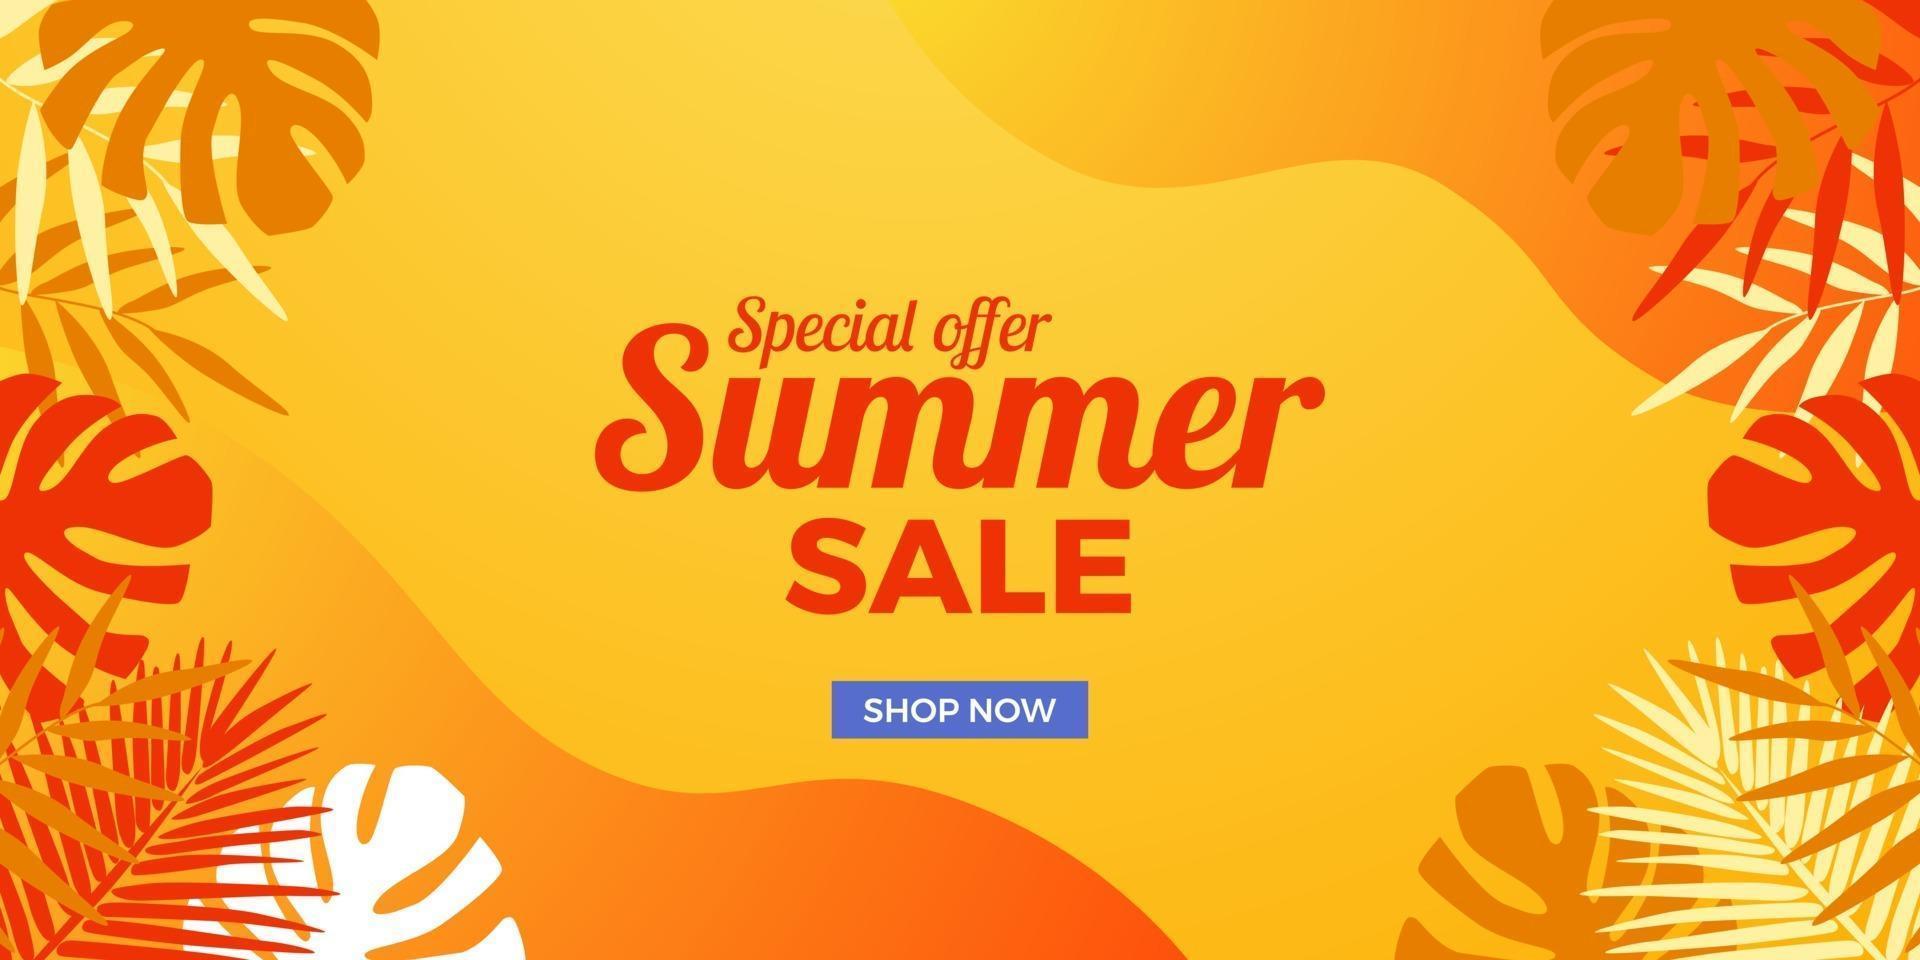 Oferta de venta de verano Banner de promoción de descuento con hojas de decoración de memphis abstracta y fondo naranja vector